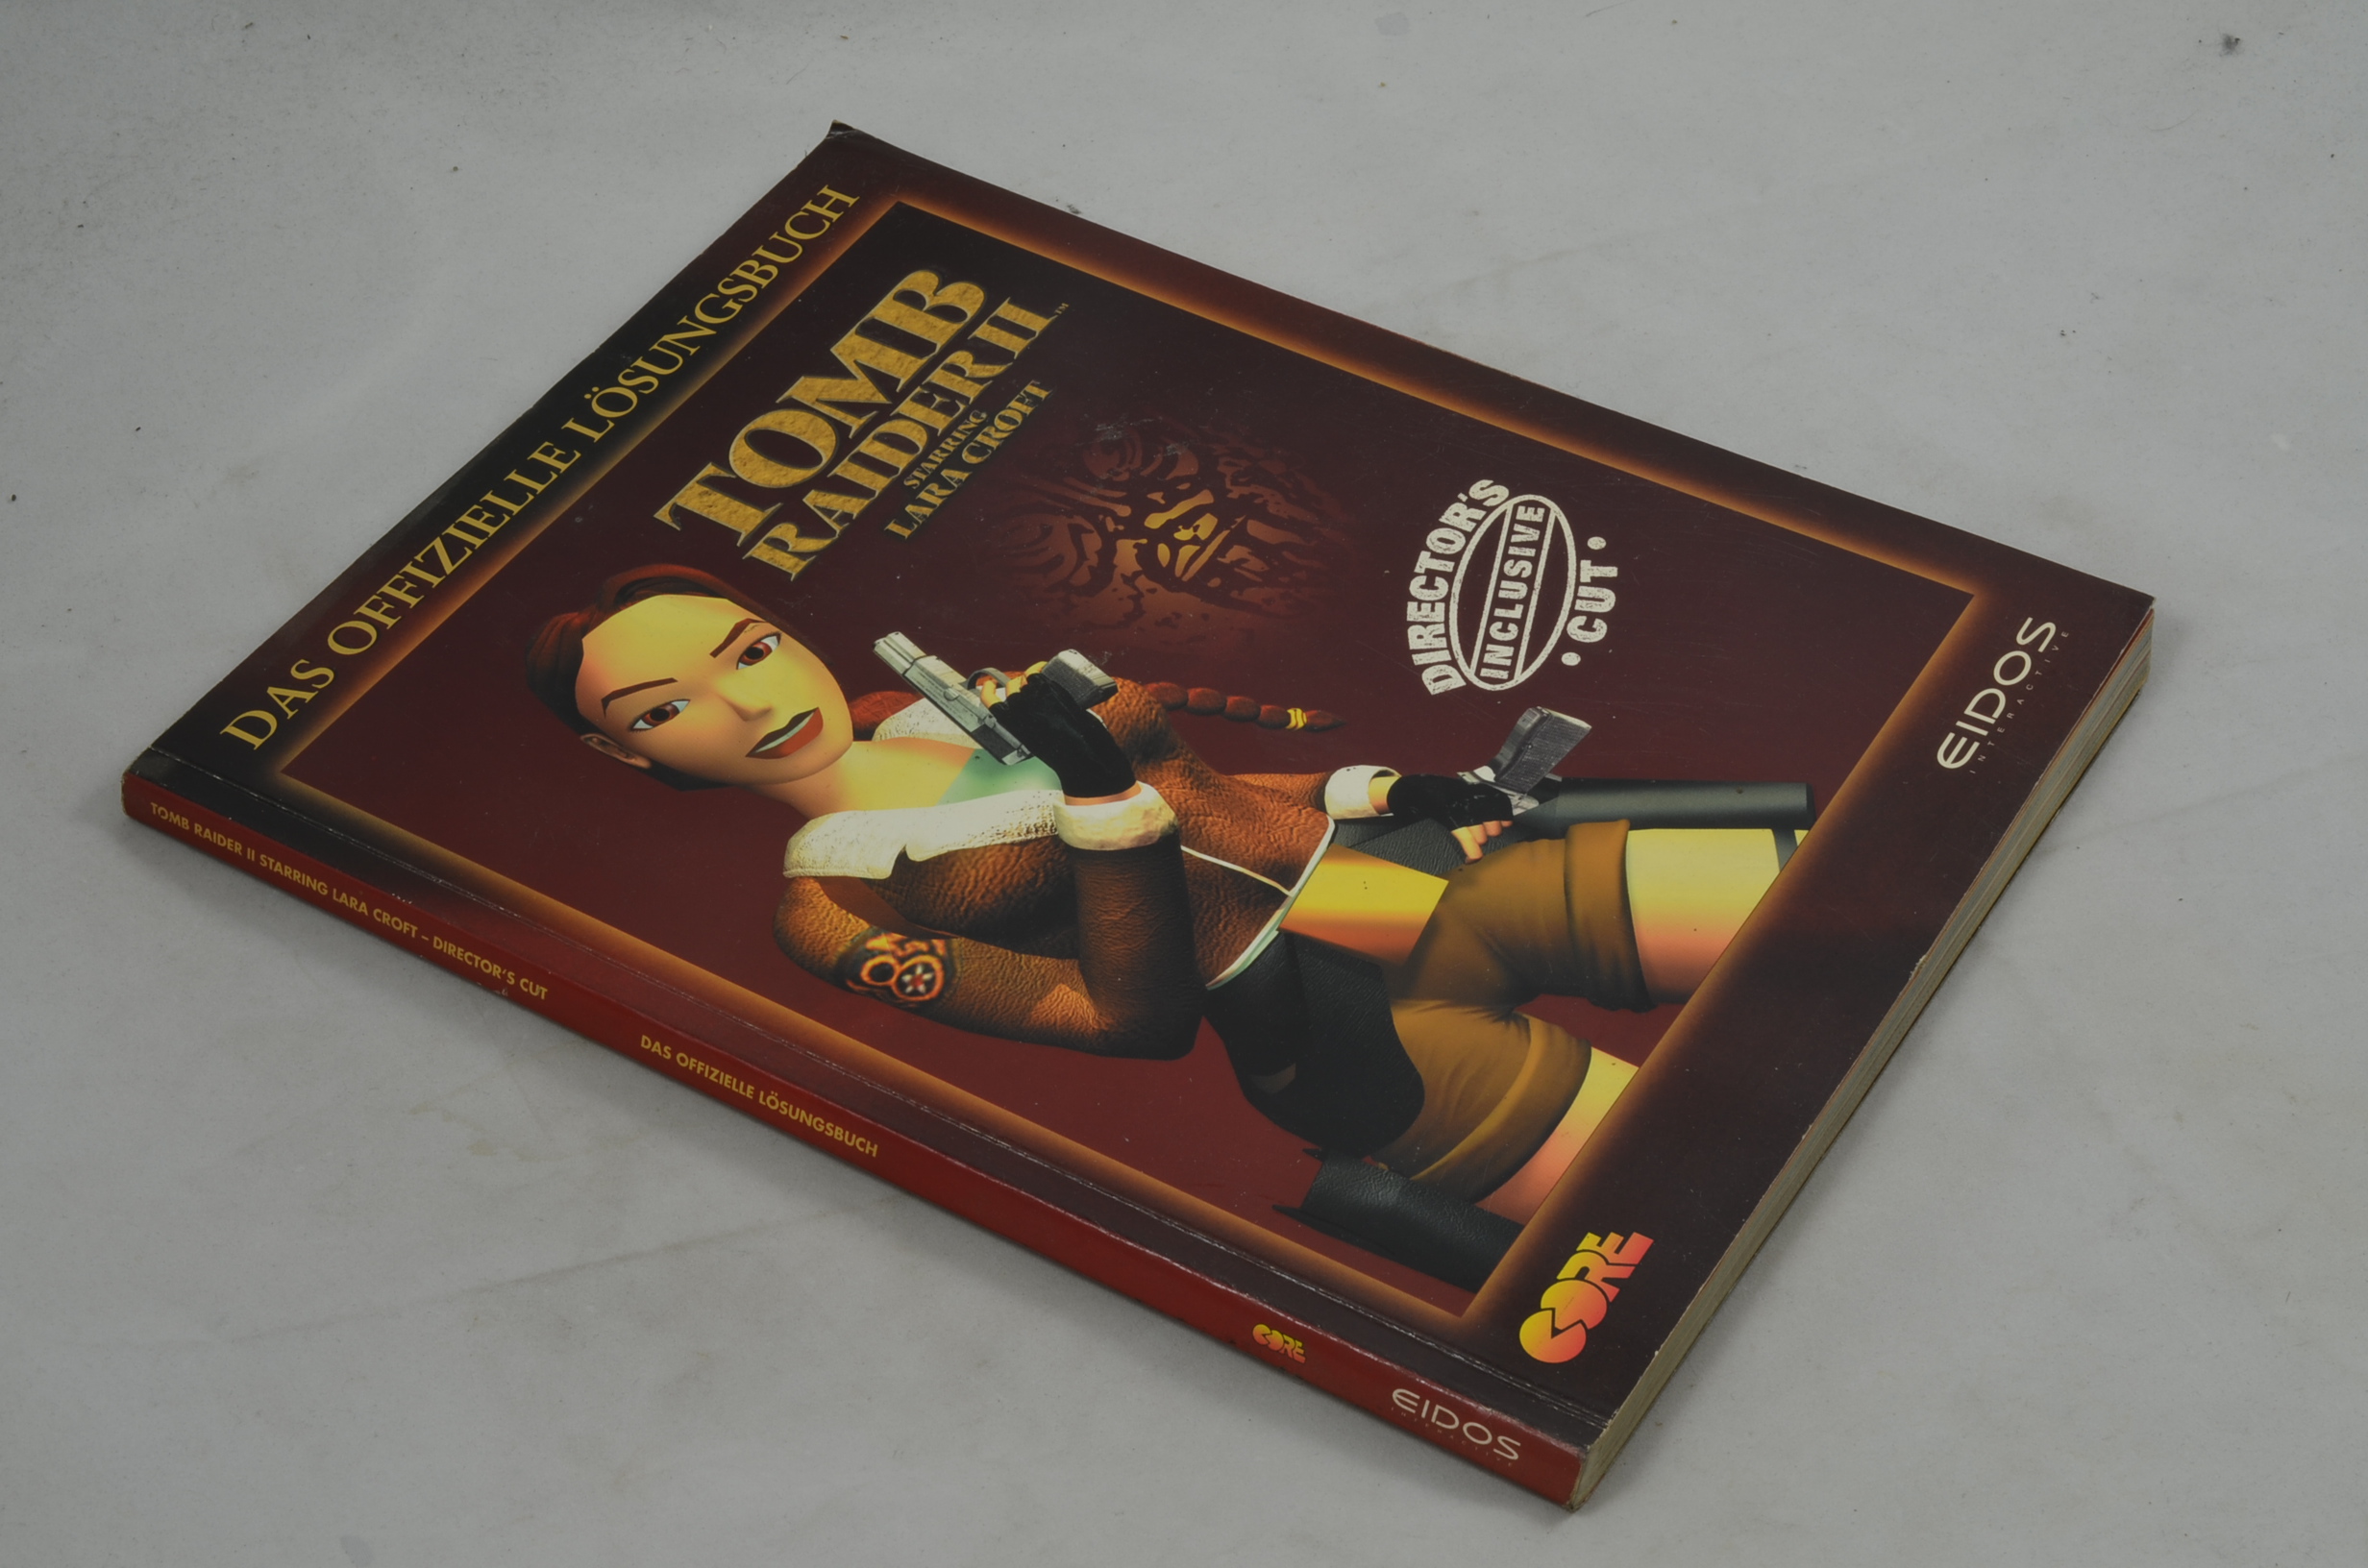 Produktbild von Tomb Raider 2 Spielberater